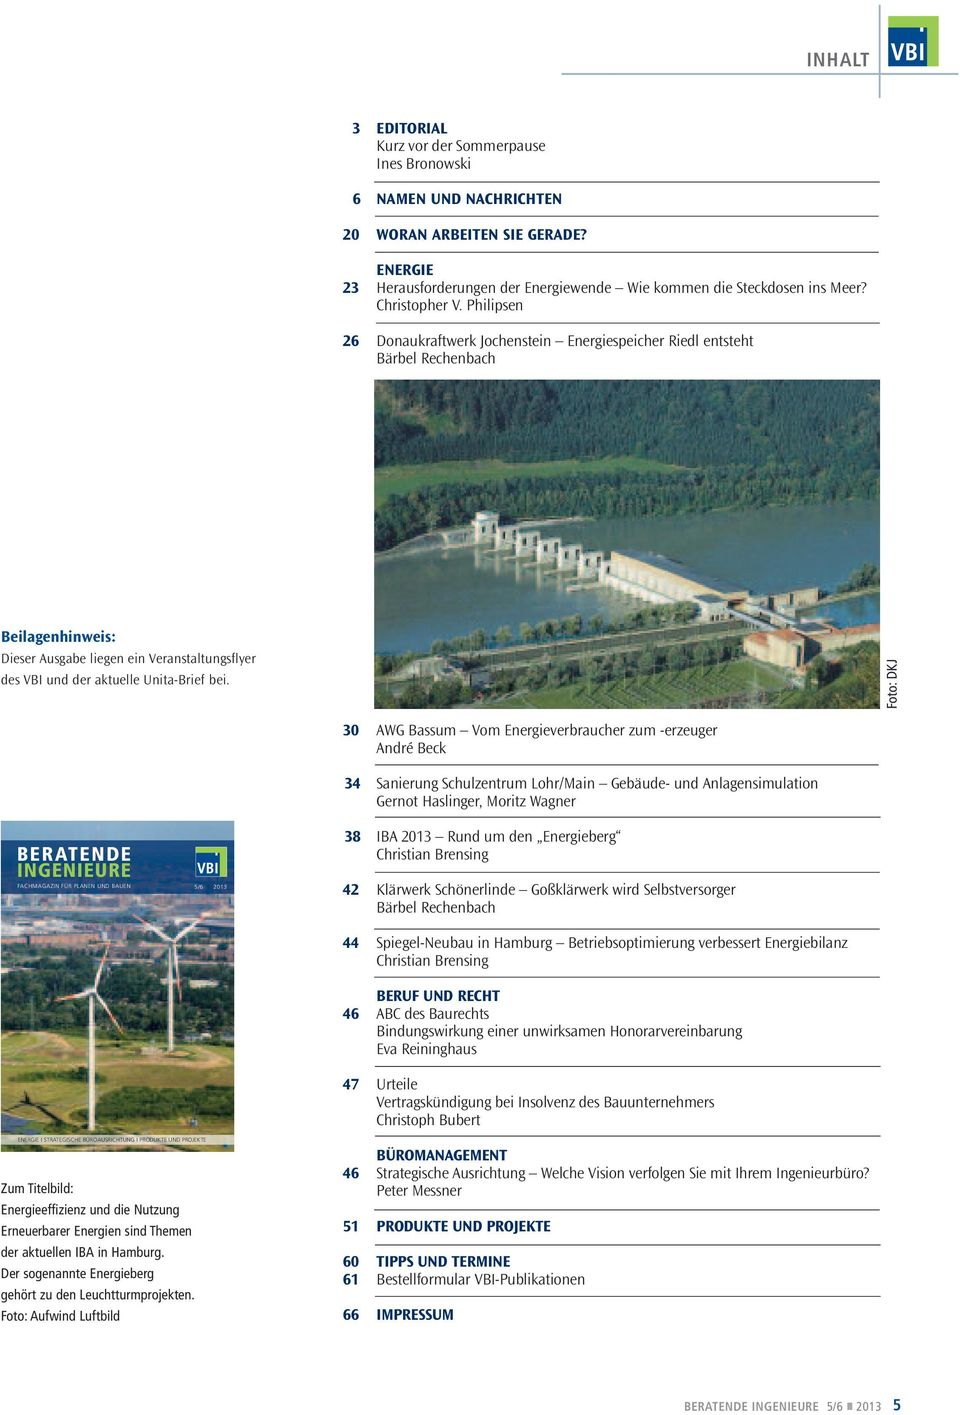 Philipsen 26 Donaukraftwerk Jochenstein Energiespeicher Riedl entsteht Bärbel Rechenbach Beilagenhinweis: Dieser Ausgabe liegen ein Veranstaltungsflyer des VBI und der aktuelle Unita-Brief bei.